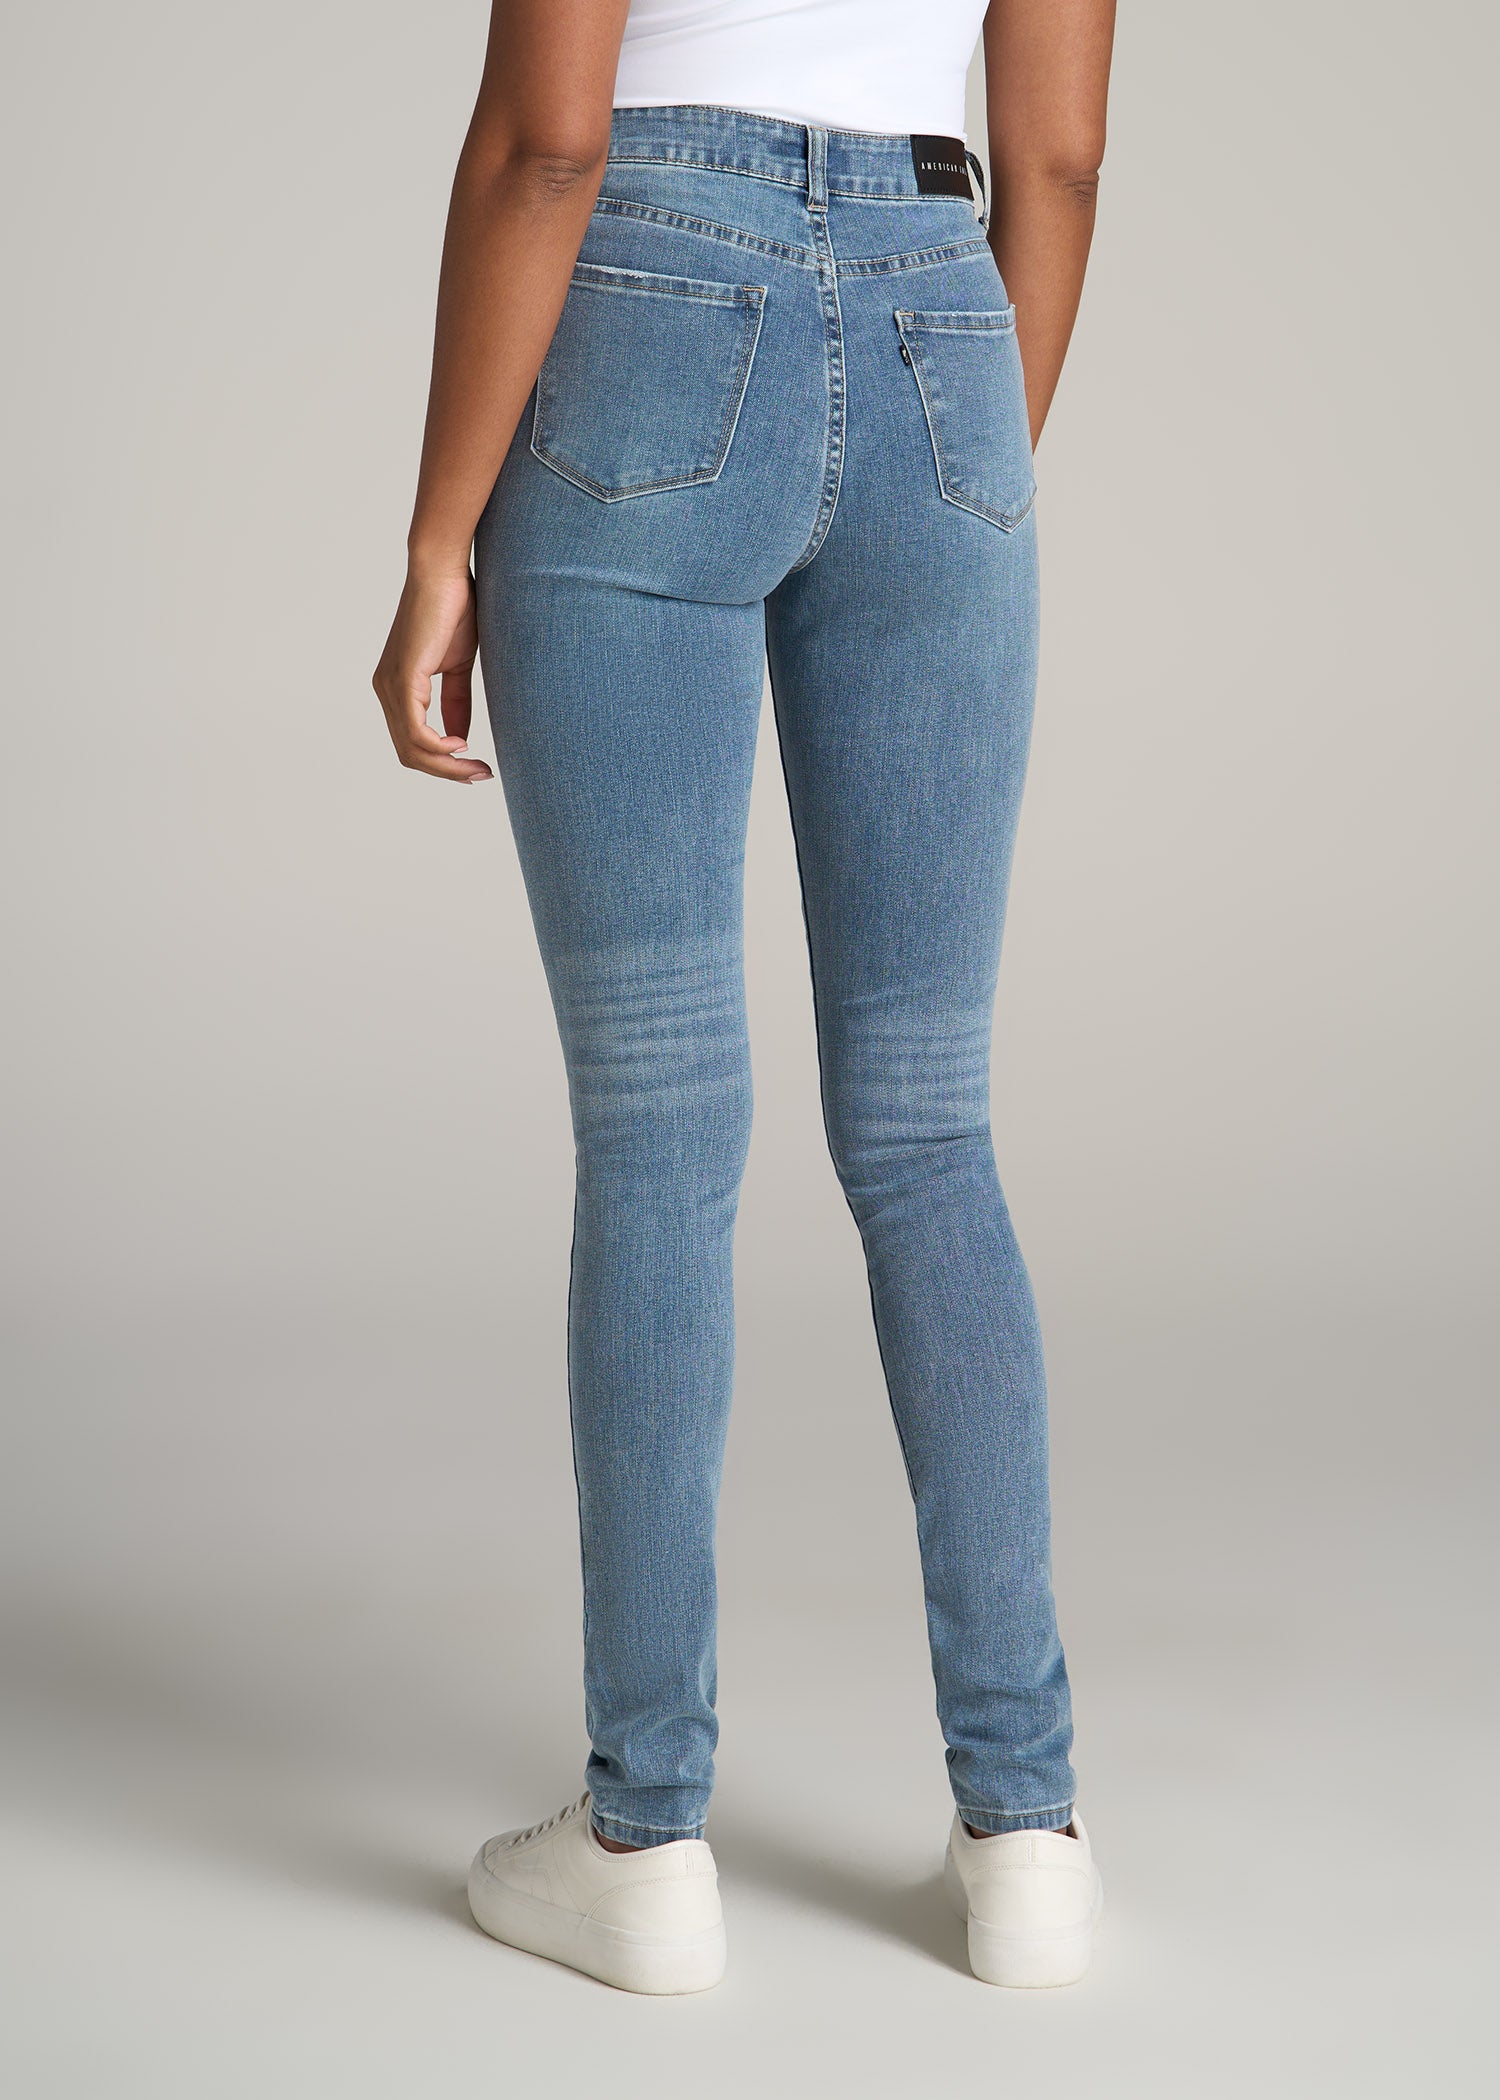 chanel women jeans